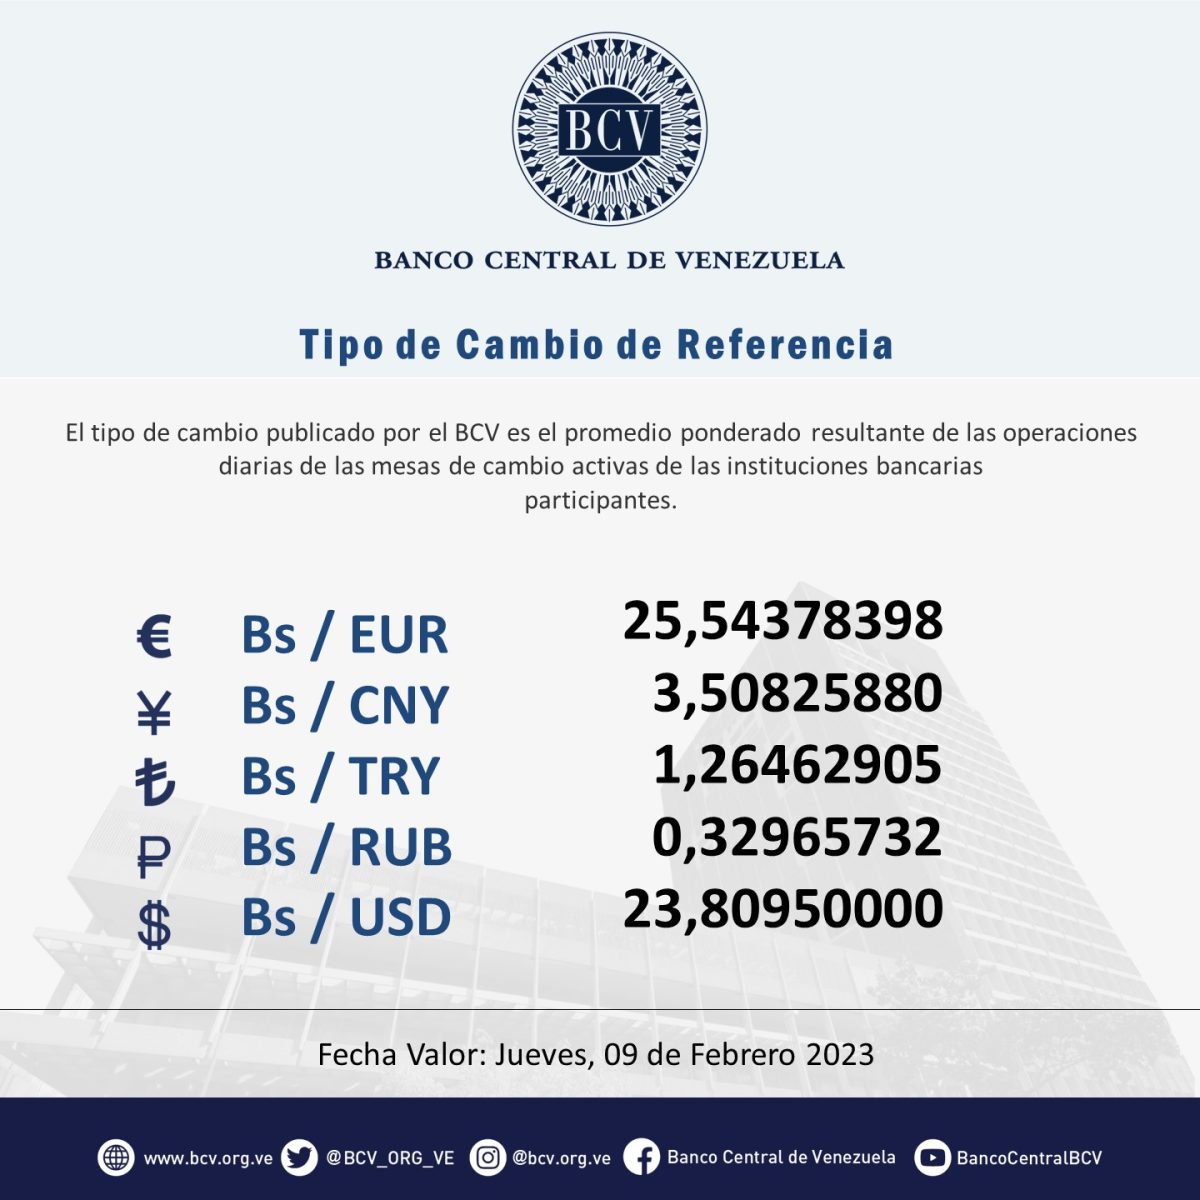 dolartoday en venezuela precio del dolar jueves 9 de febrero de 2023 laverdaddemonagas.com bcv66666